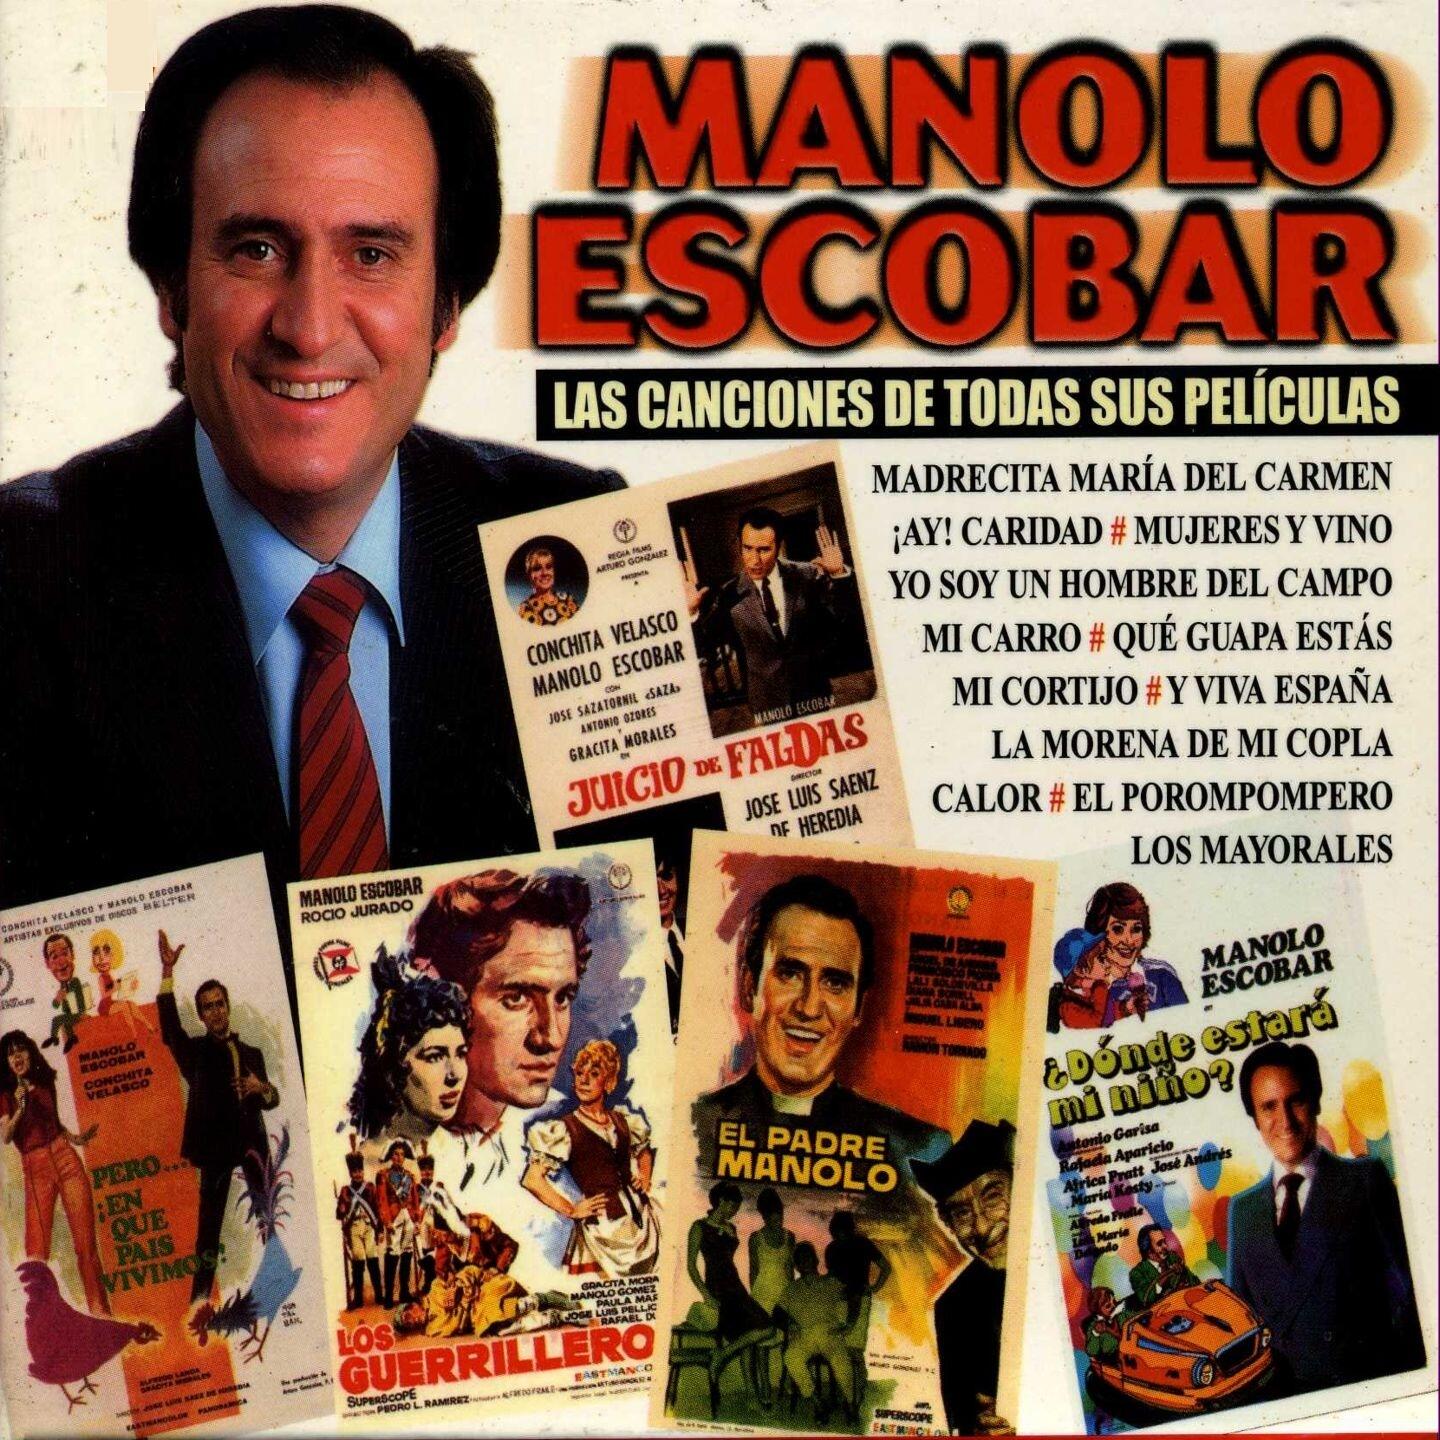 Enfriarse perdón Mensurable ♫ Manolo Escobar | iHeart